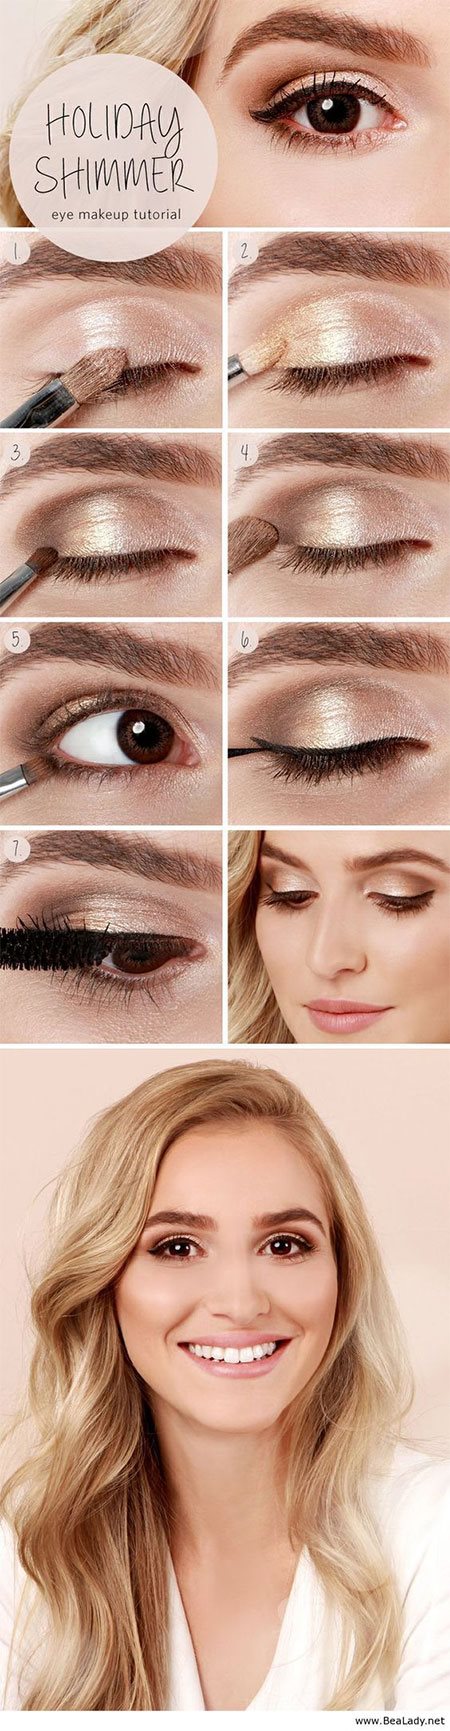 makeup-tutorial-eyeshadow-62_4 Make-up tutorial eyeshadow